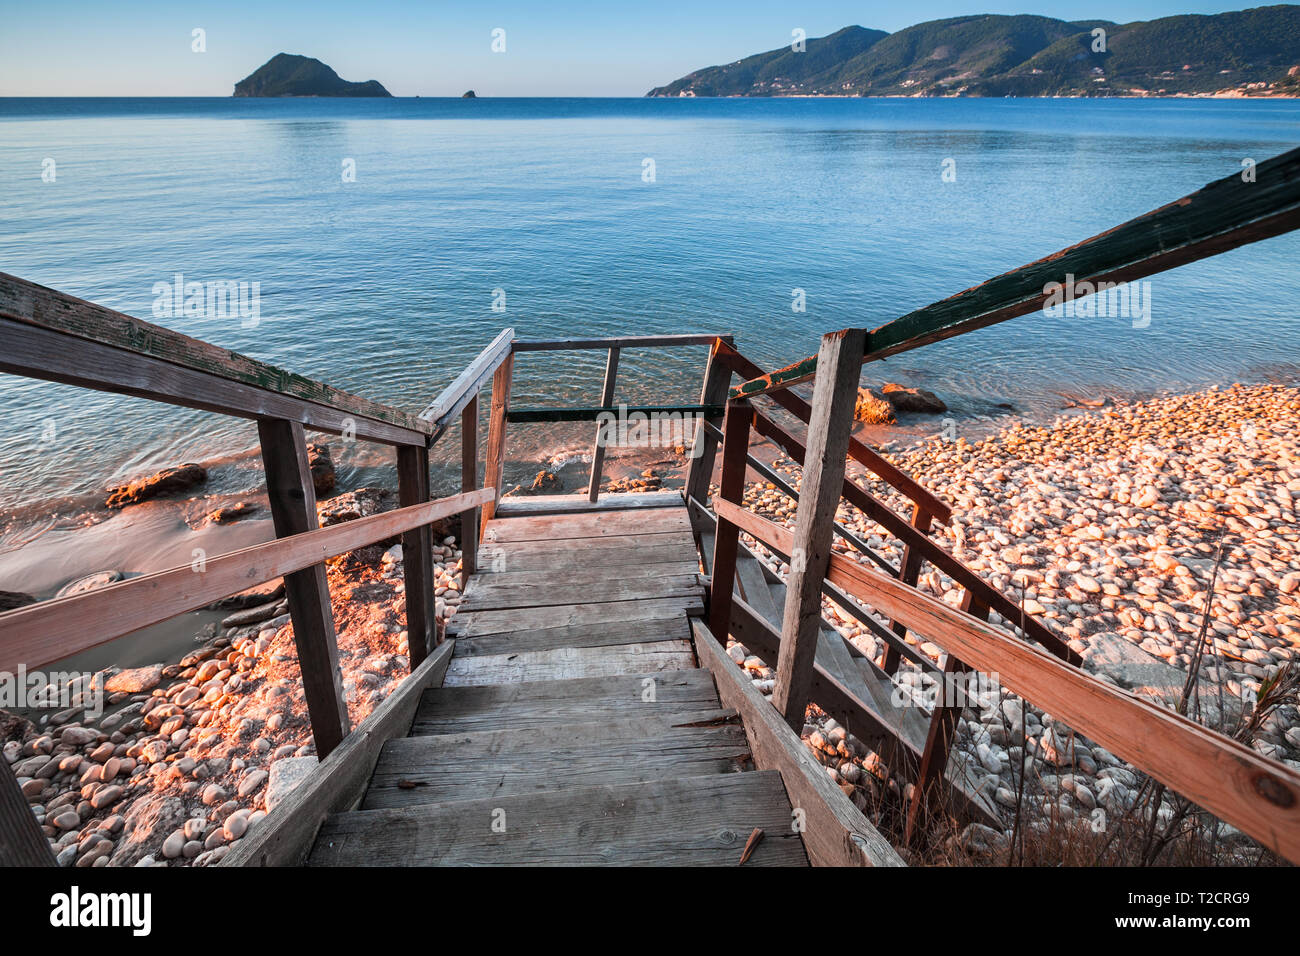 Vue en perspective d'escalier en bois allant jusqu'à la plage. Côte de l'île de Zakynthos, Grèce Banque D'Images